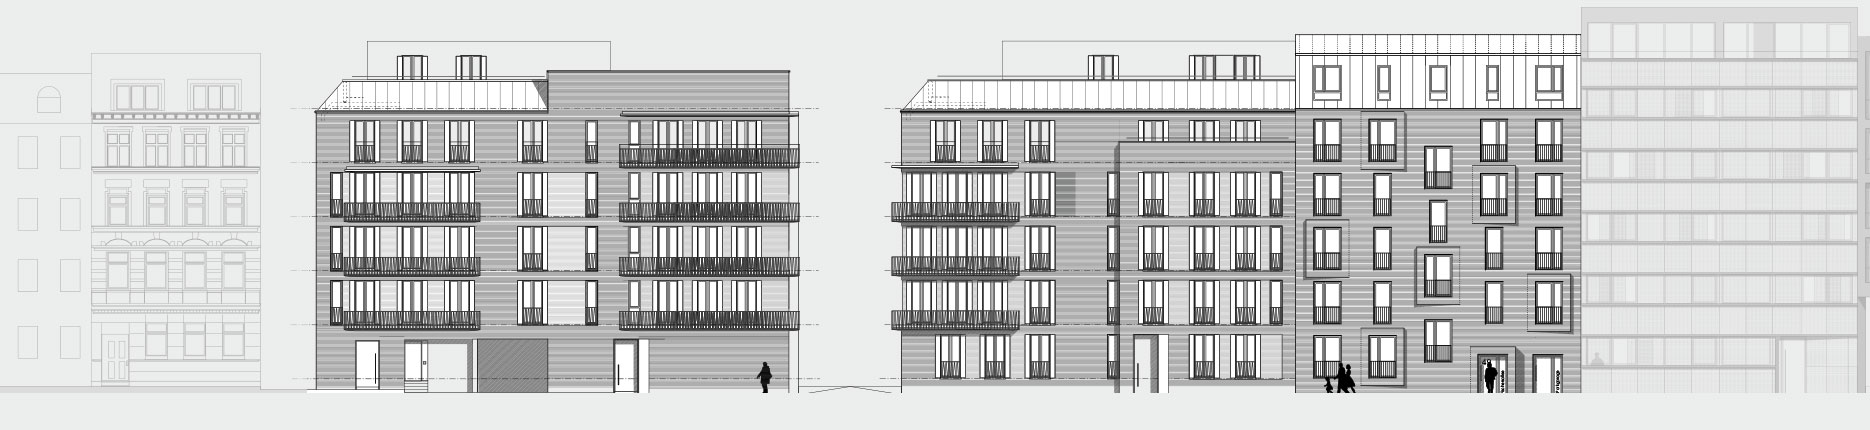 Architekturzeichnung - Diese Zeichnung zeigt ein Bauprojekt für Kapitalanleger in Hamburg Ottensen.